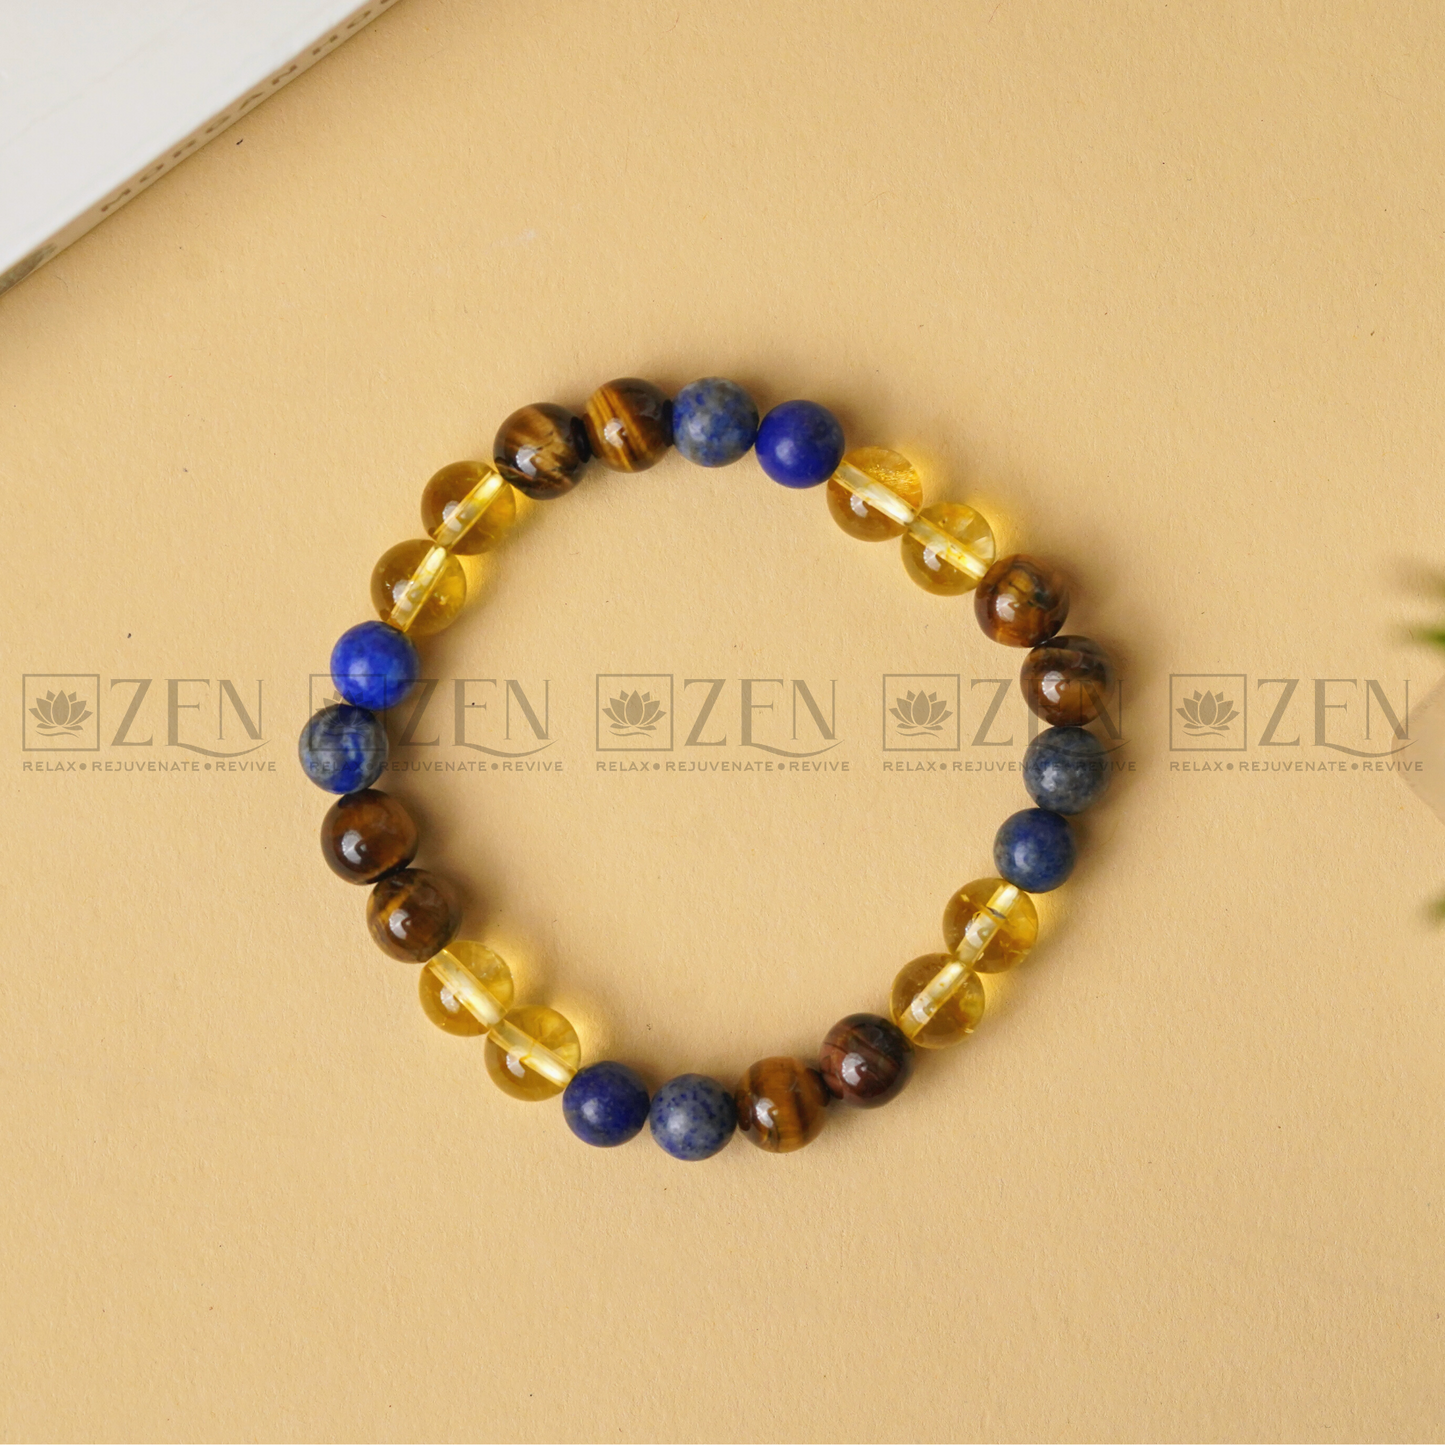 Zen Confidence Boosting Bracelet The Zen Crystals